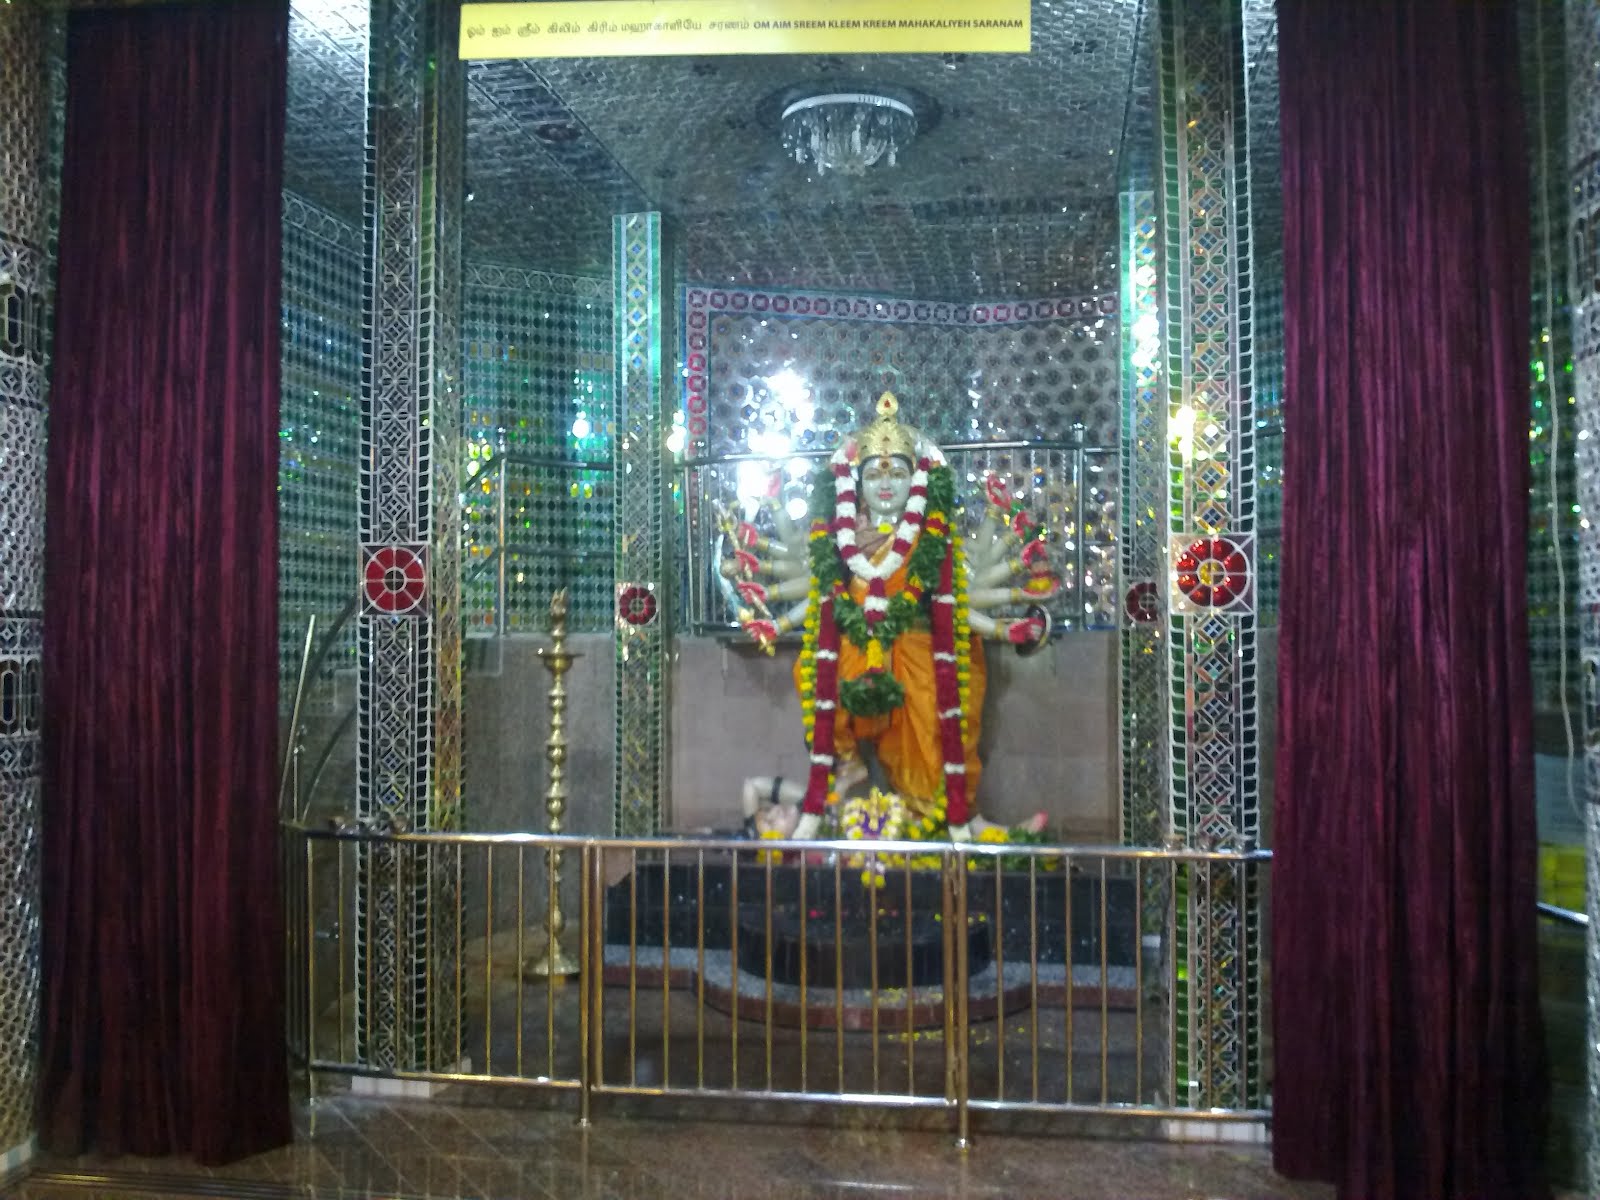 Sri Rajakaliamman Glass Temple